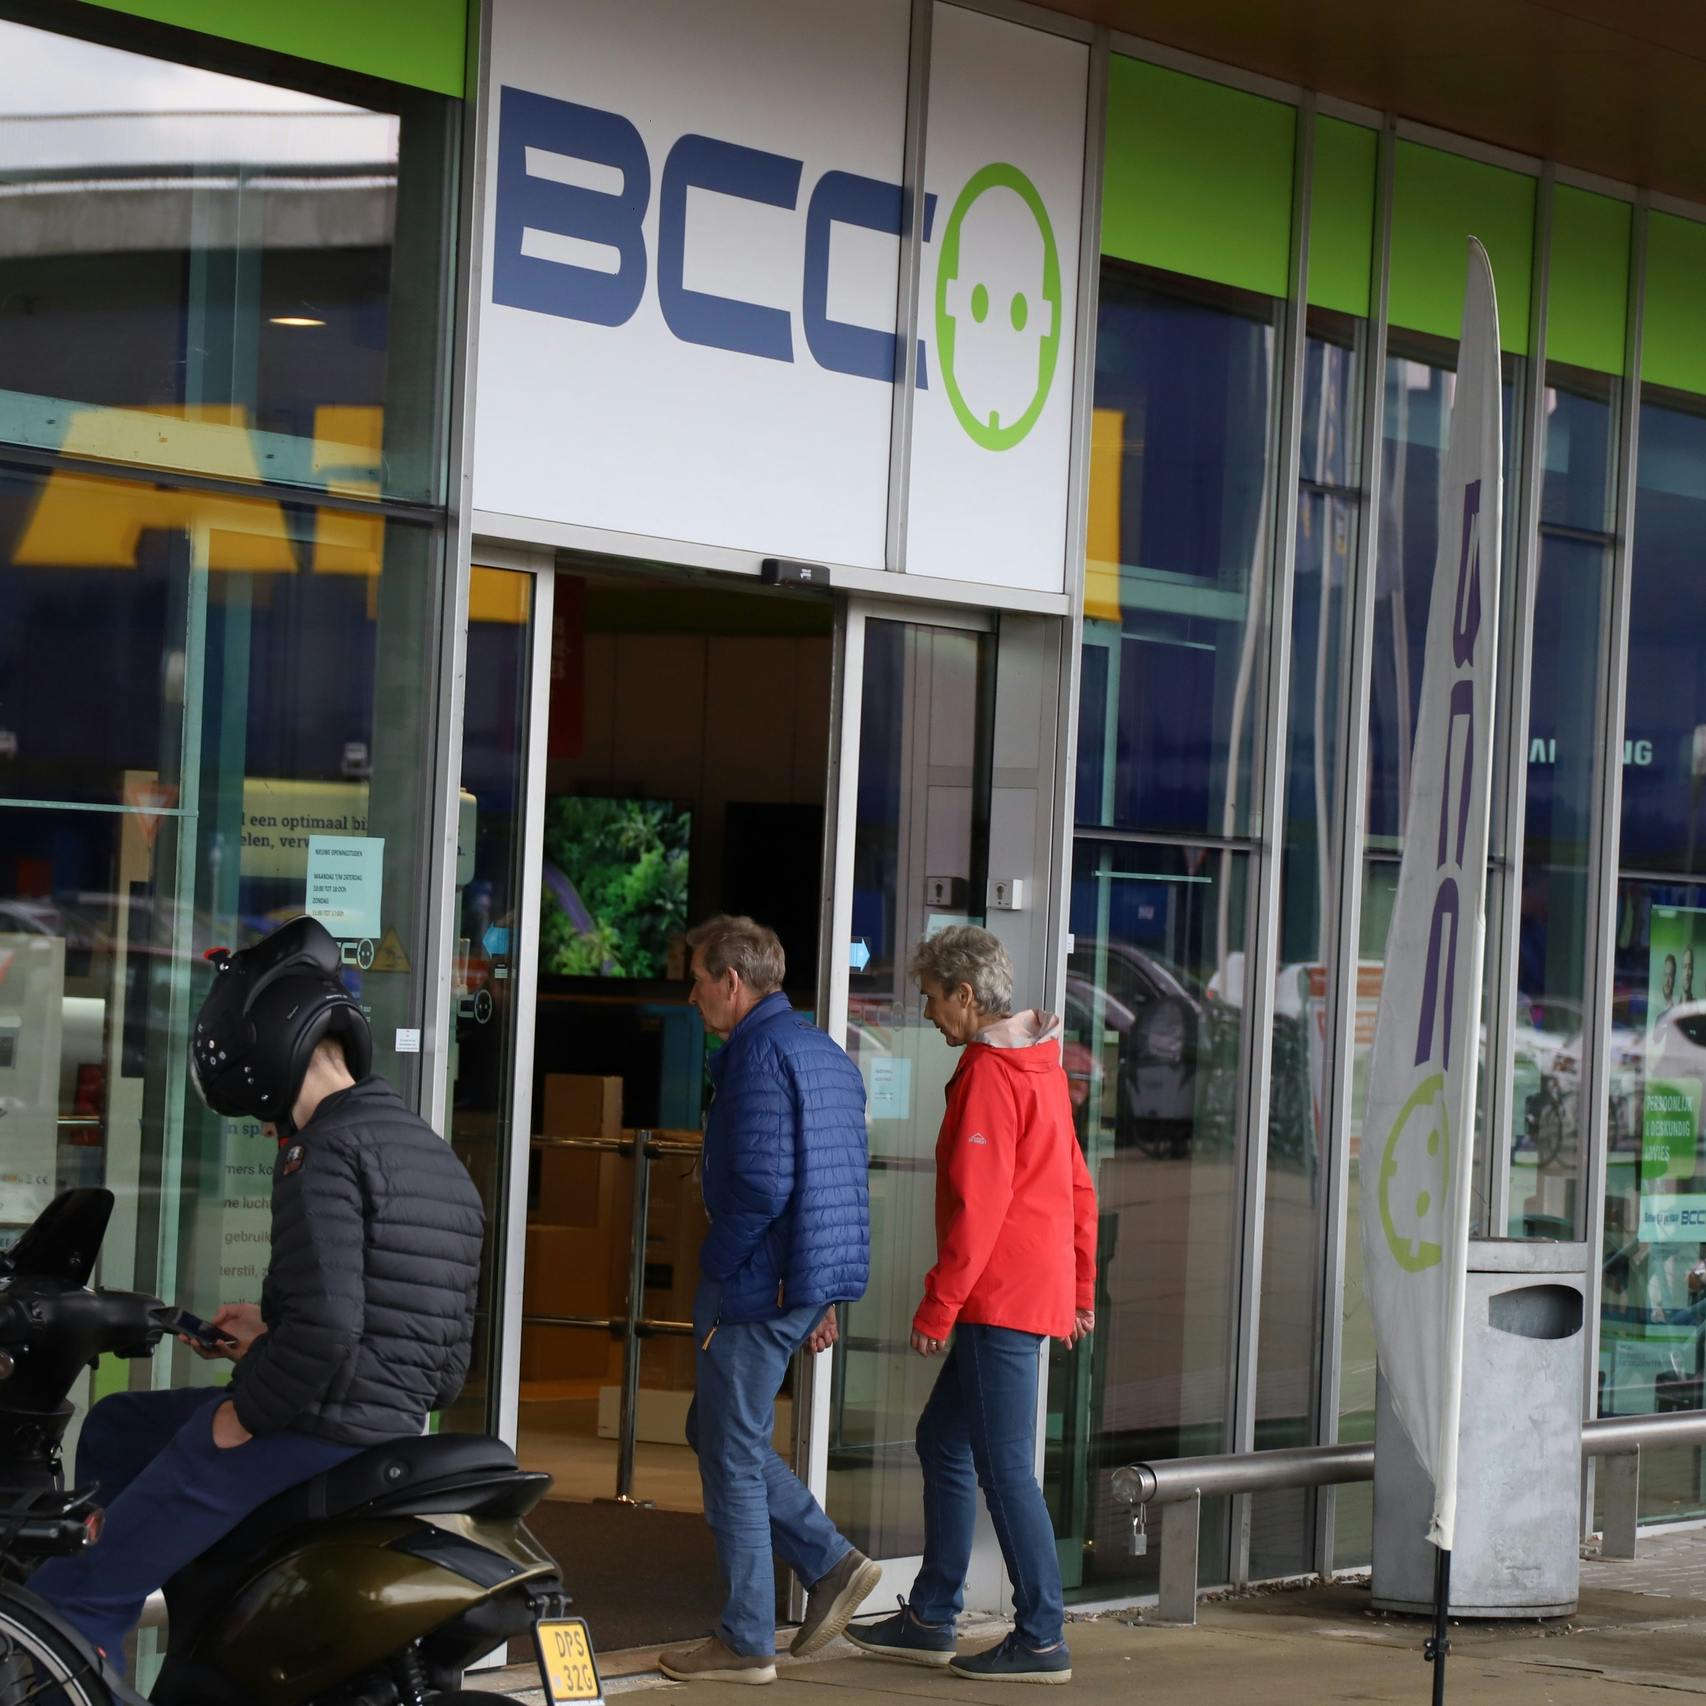 BCC officieel failliet: 'Schaalvergroting en onlineconcurrentie waren nekslag'